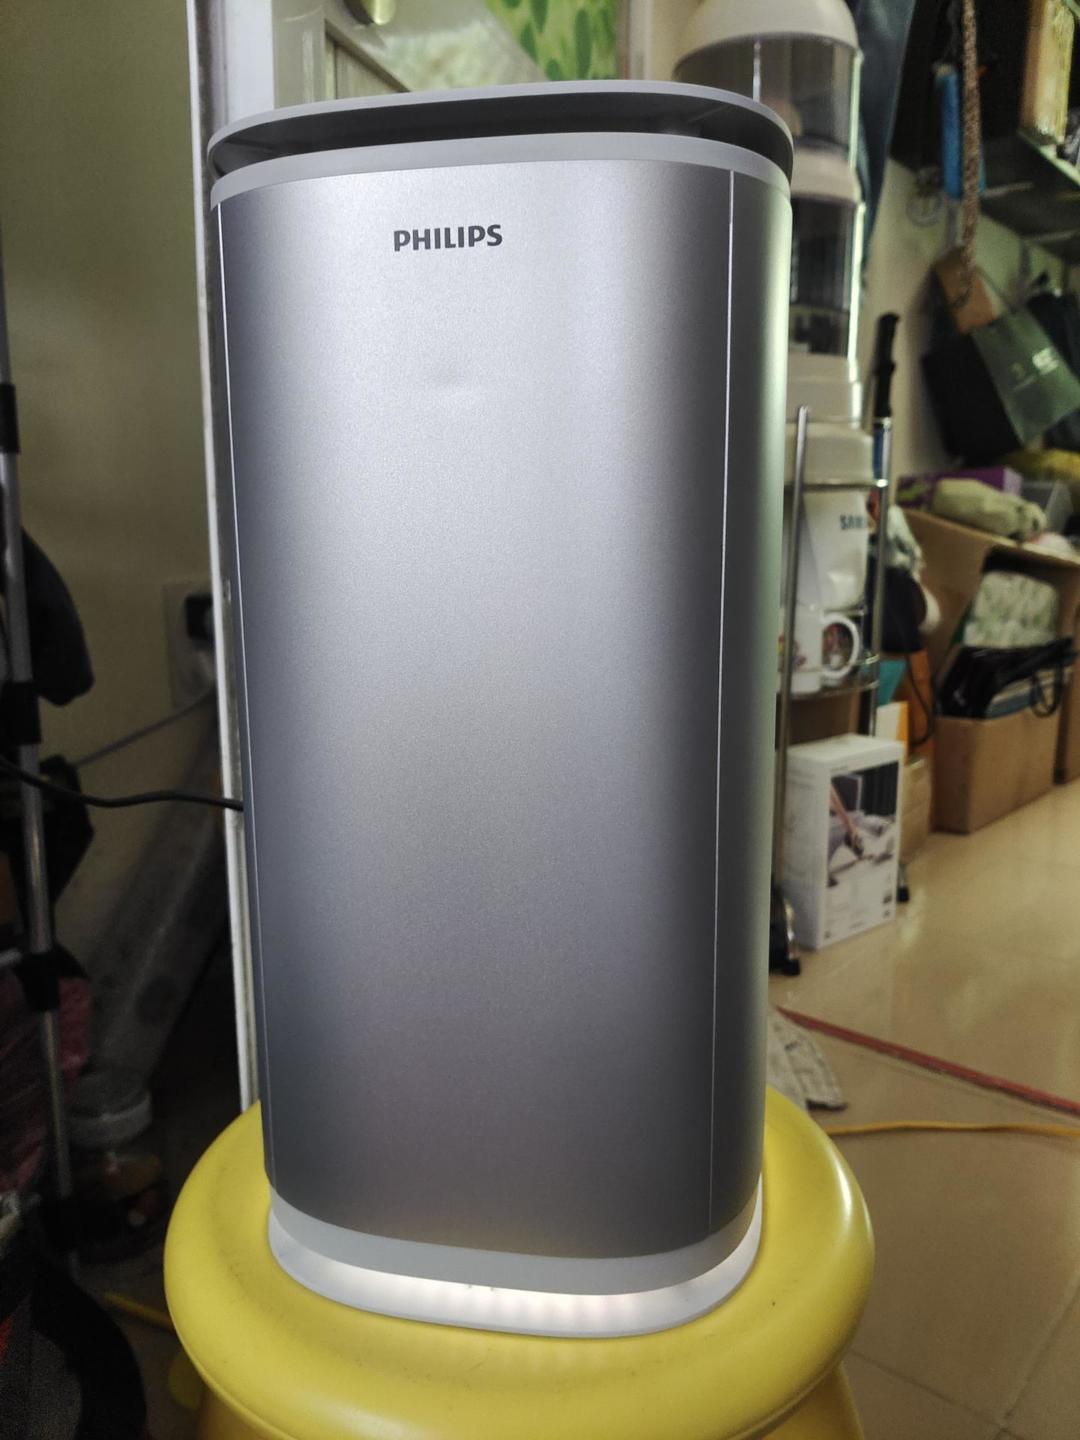 Cận cảnh máy khử trùng không khí Philips dùng tia UVC